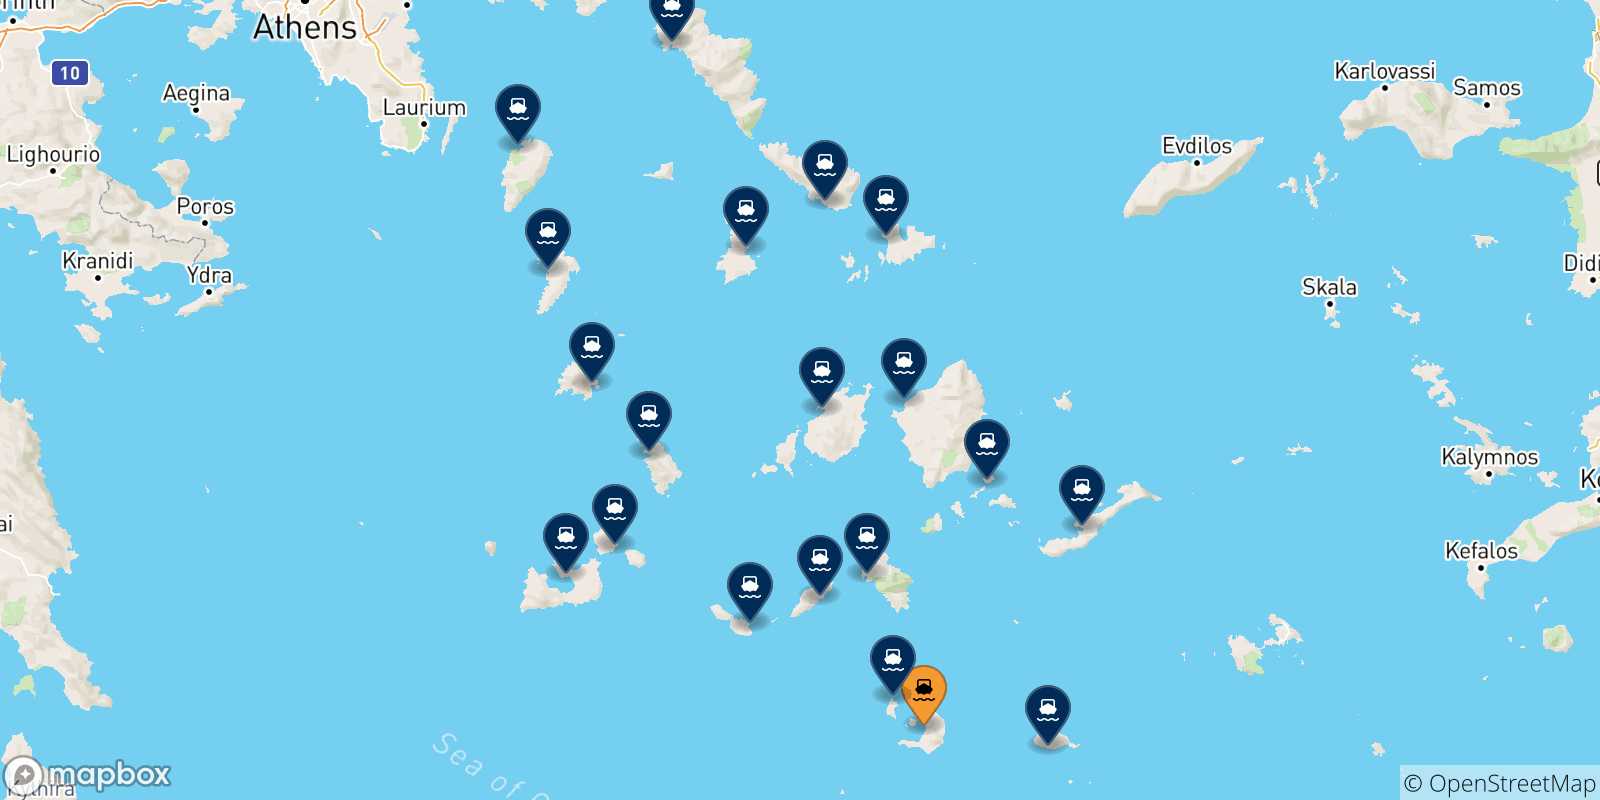 Mapa de las posibles rutas entre Santorini y  Las Cicladas